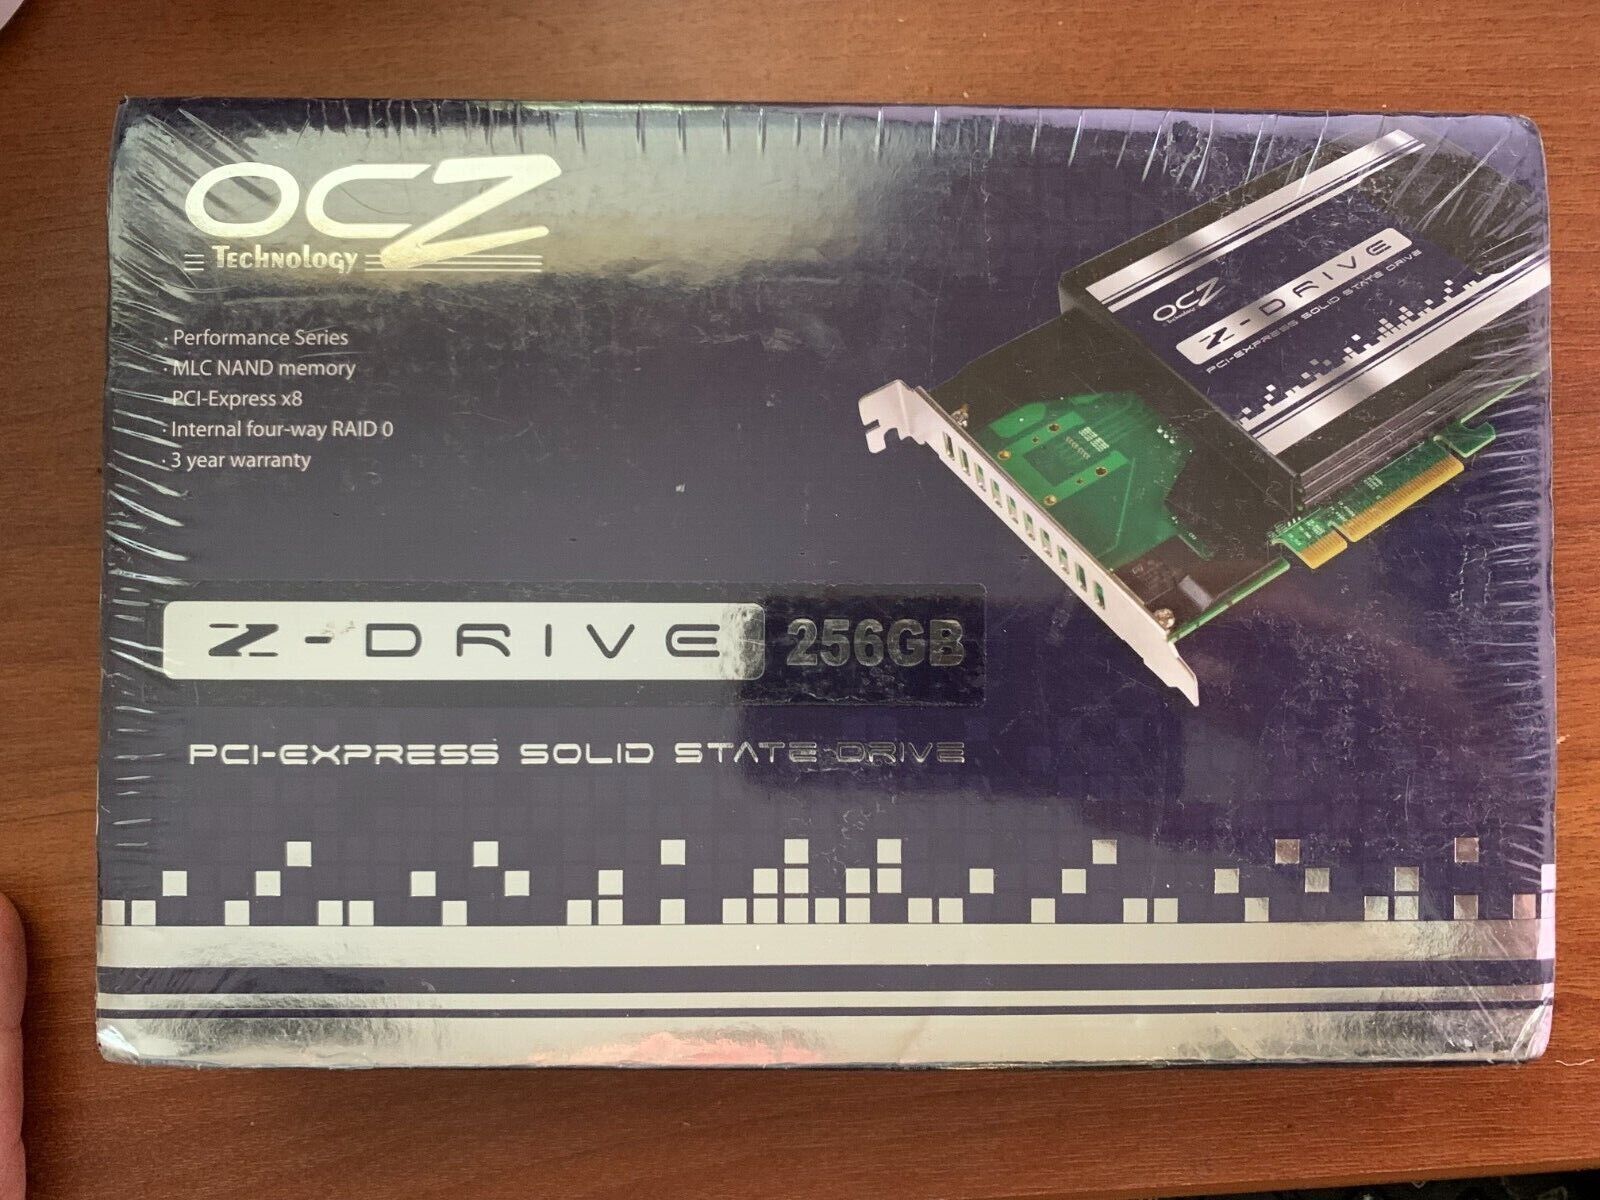  Z-Drive  PCI-E Card  256GB RAID 0